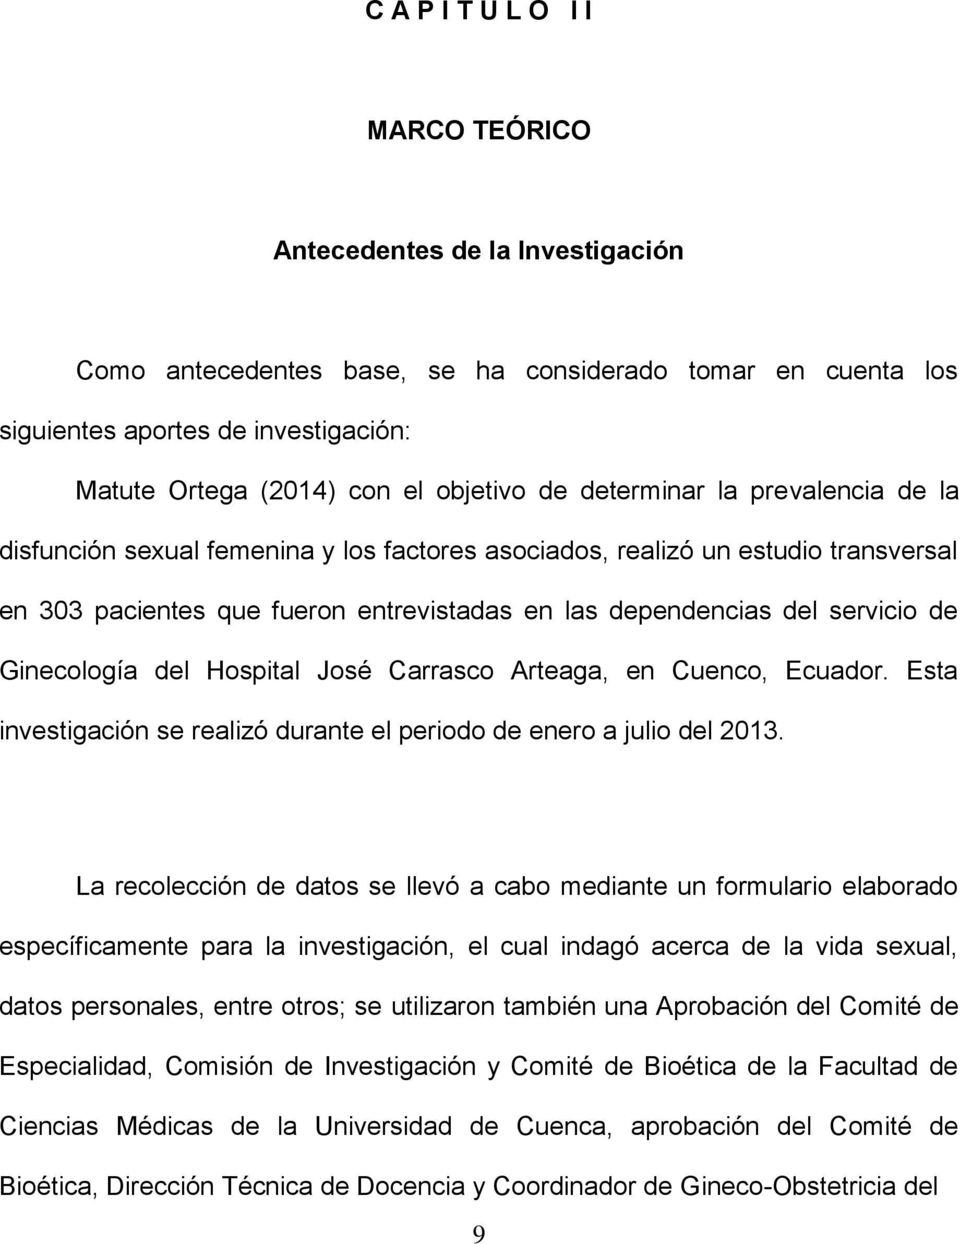 servicio de Ginecología del Hospital José Carrasco Arteaga, en Cuenco, Ecuador. Esta investigación se realizó durante el periodo de enero a julio del 2013.